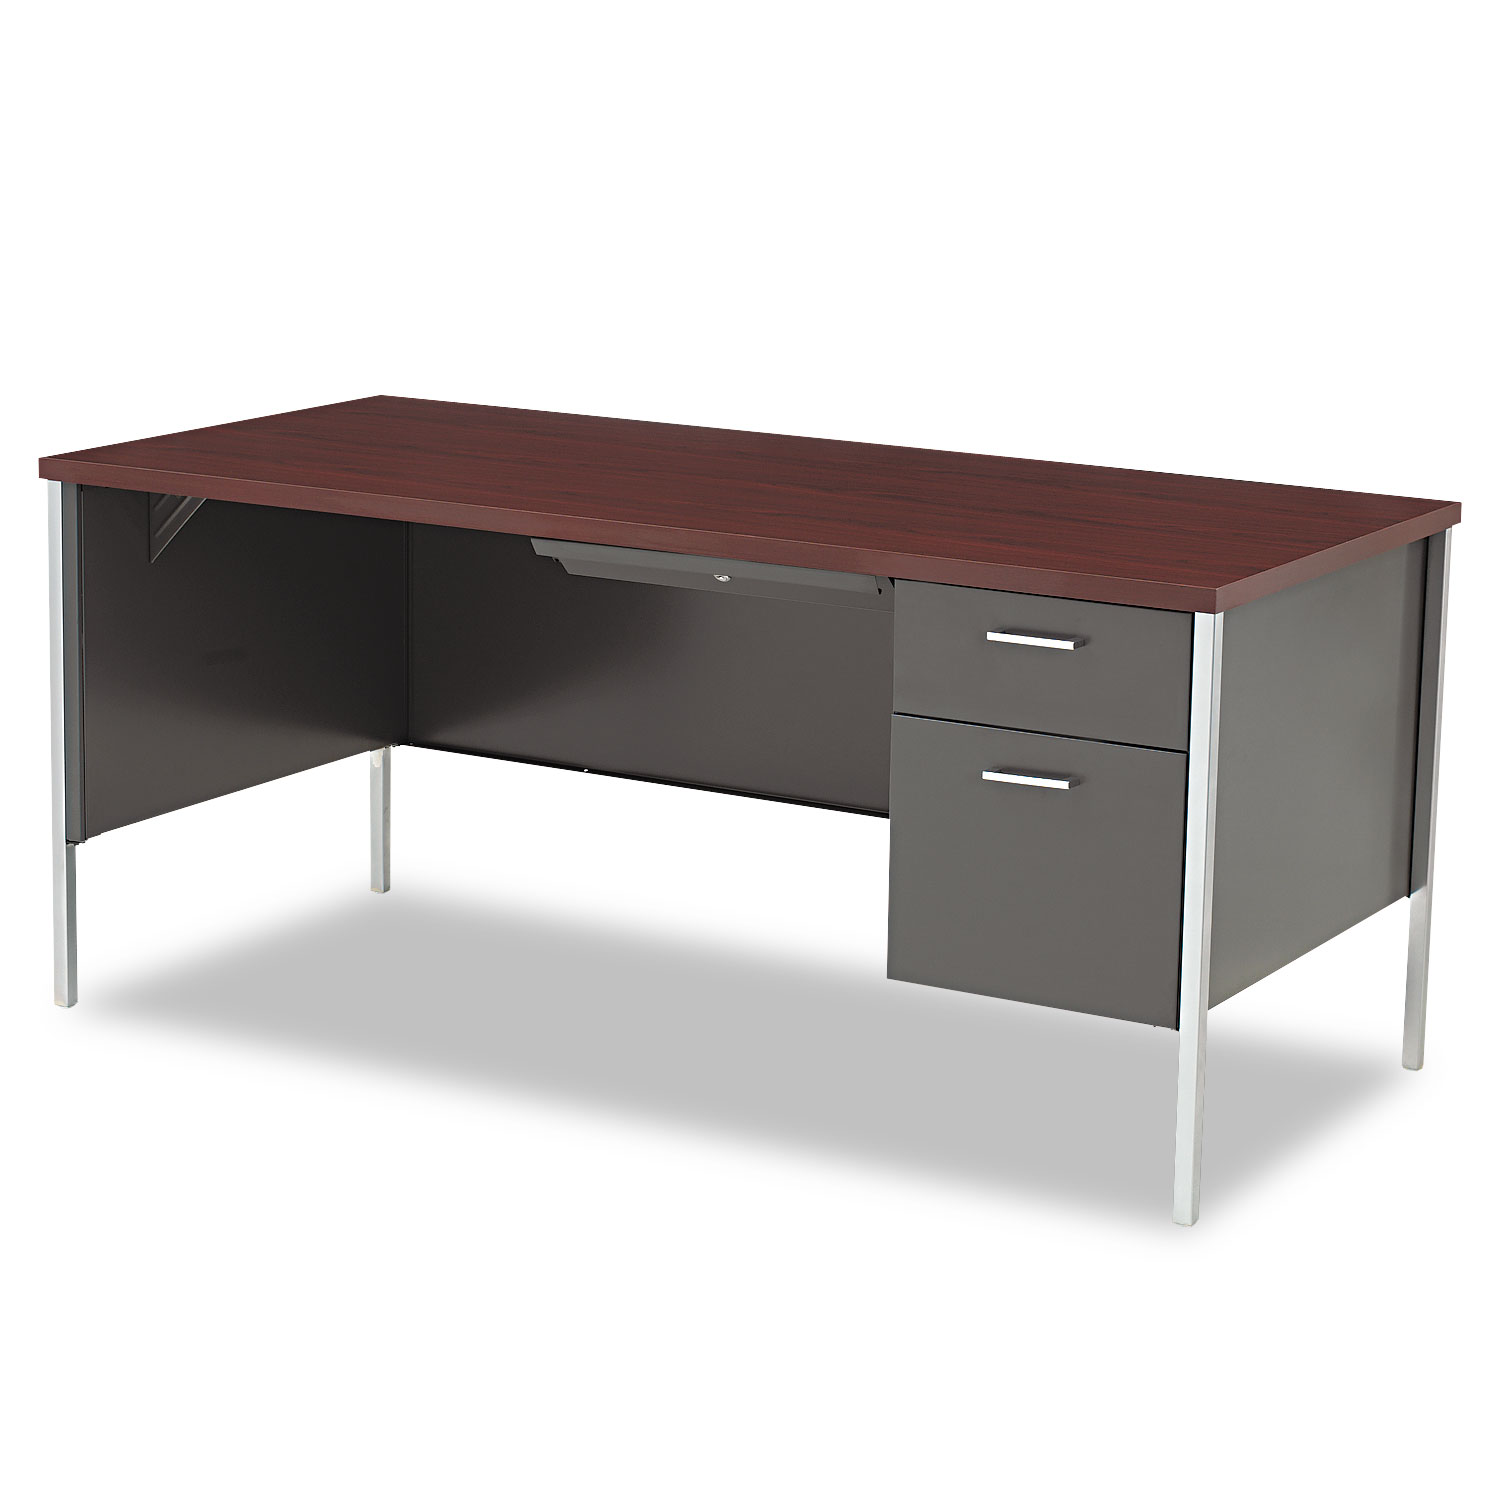  HON H34973R.N.S 34000 Series Right Pedestal Desk, 66w x 30d x 29.5h, Mahogany/Charcoal (HON34973RNS) 